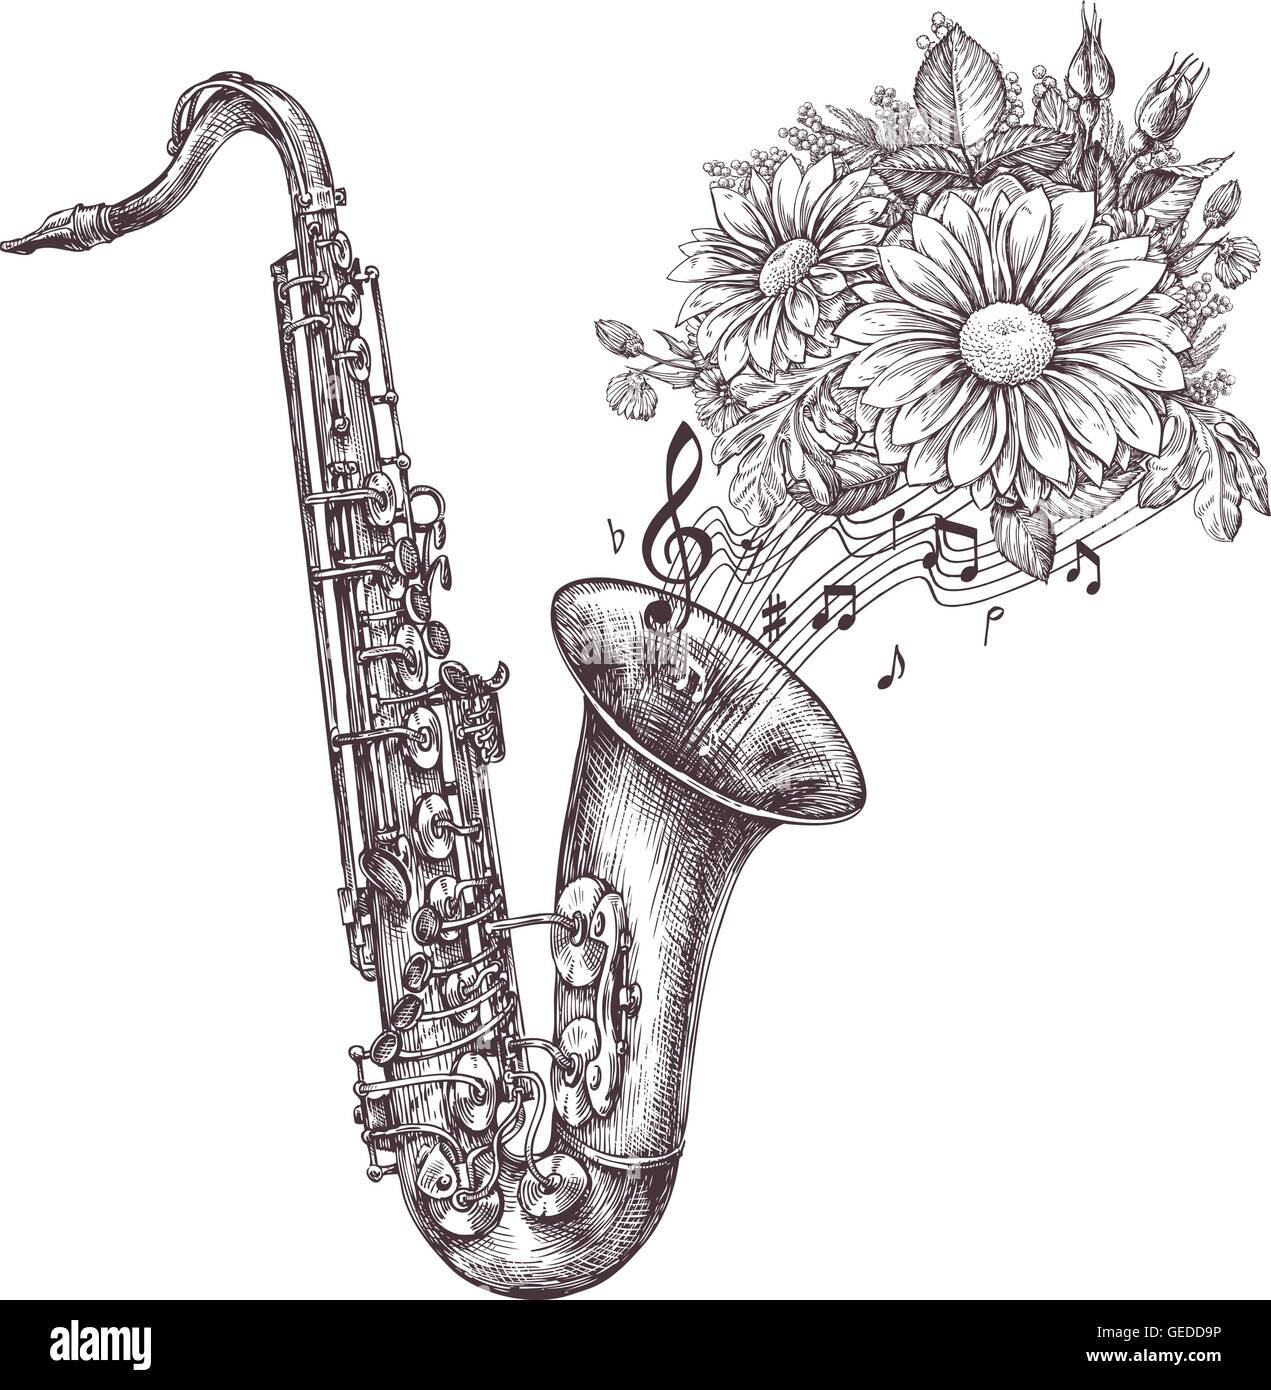 La musique jazz. Esquisse dessinée à la main d'un saxophone, sax et fleurs. Vector illustration Illustration de Vecteur